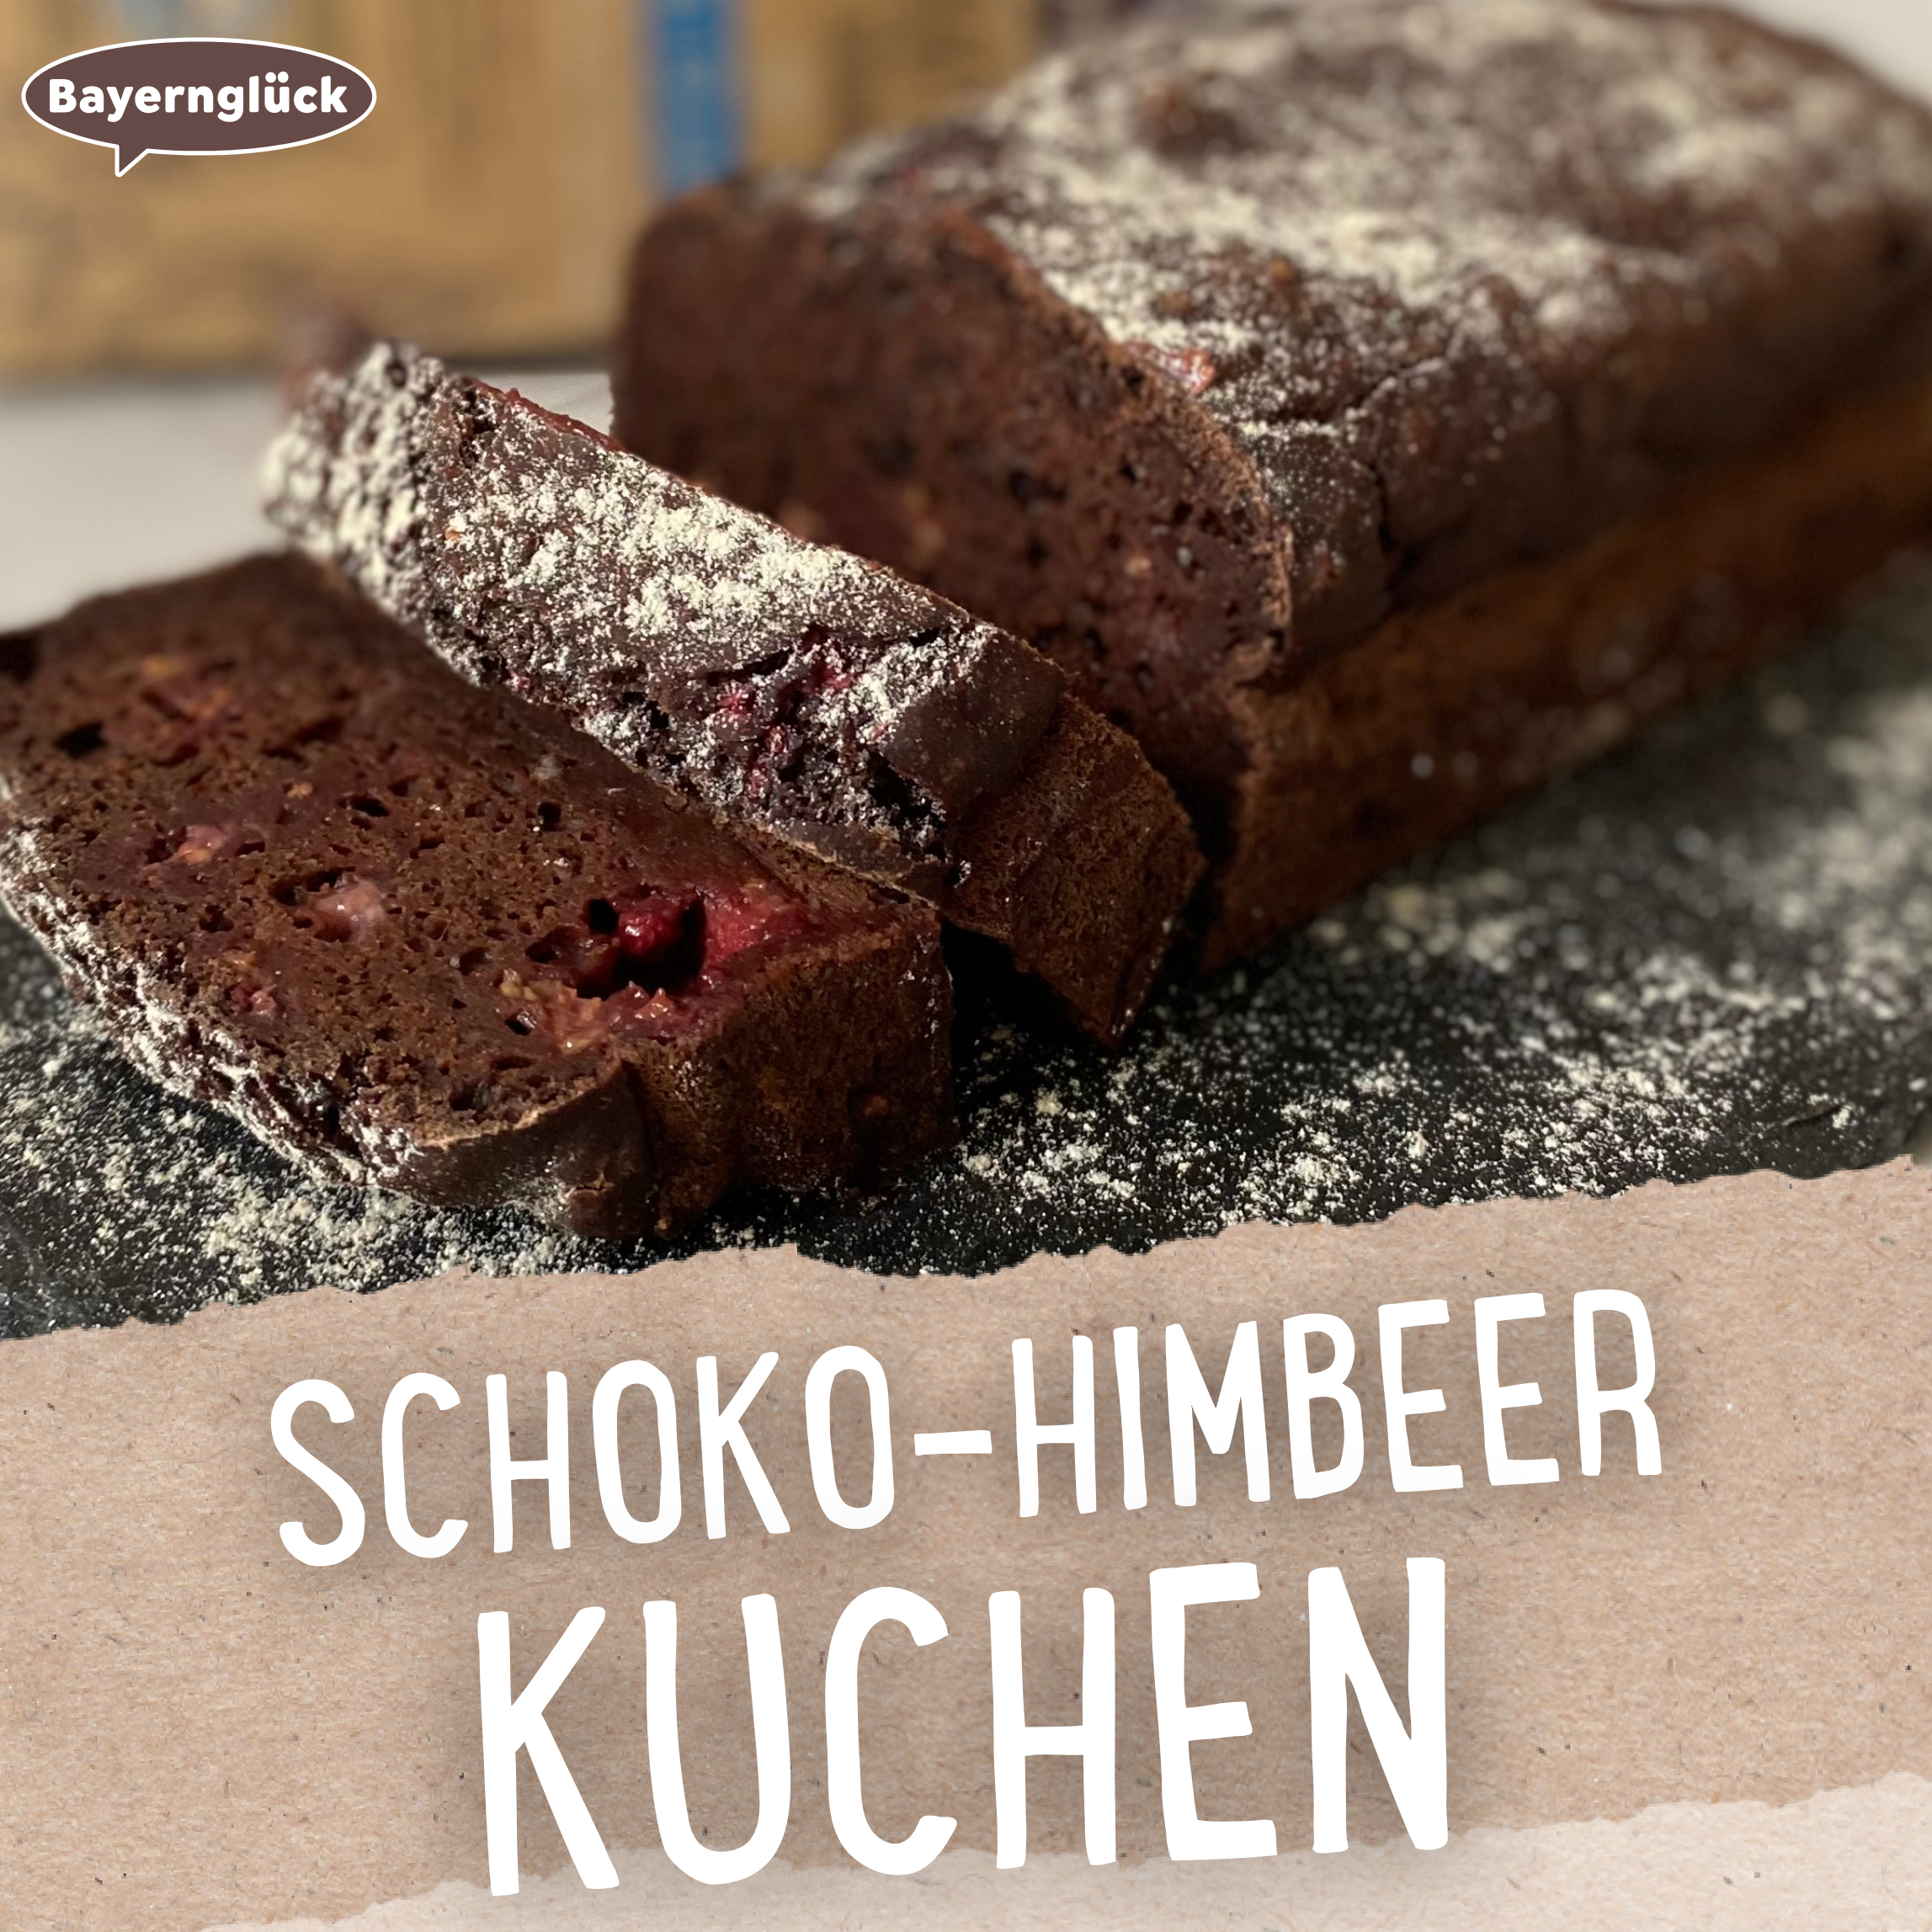 Schoko-Himbeer Kuchen